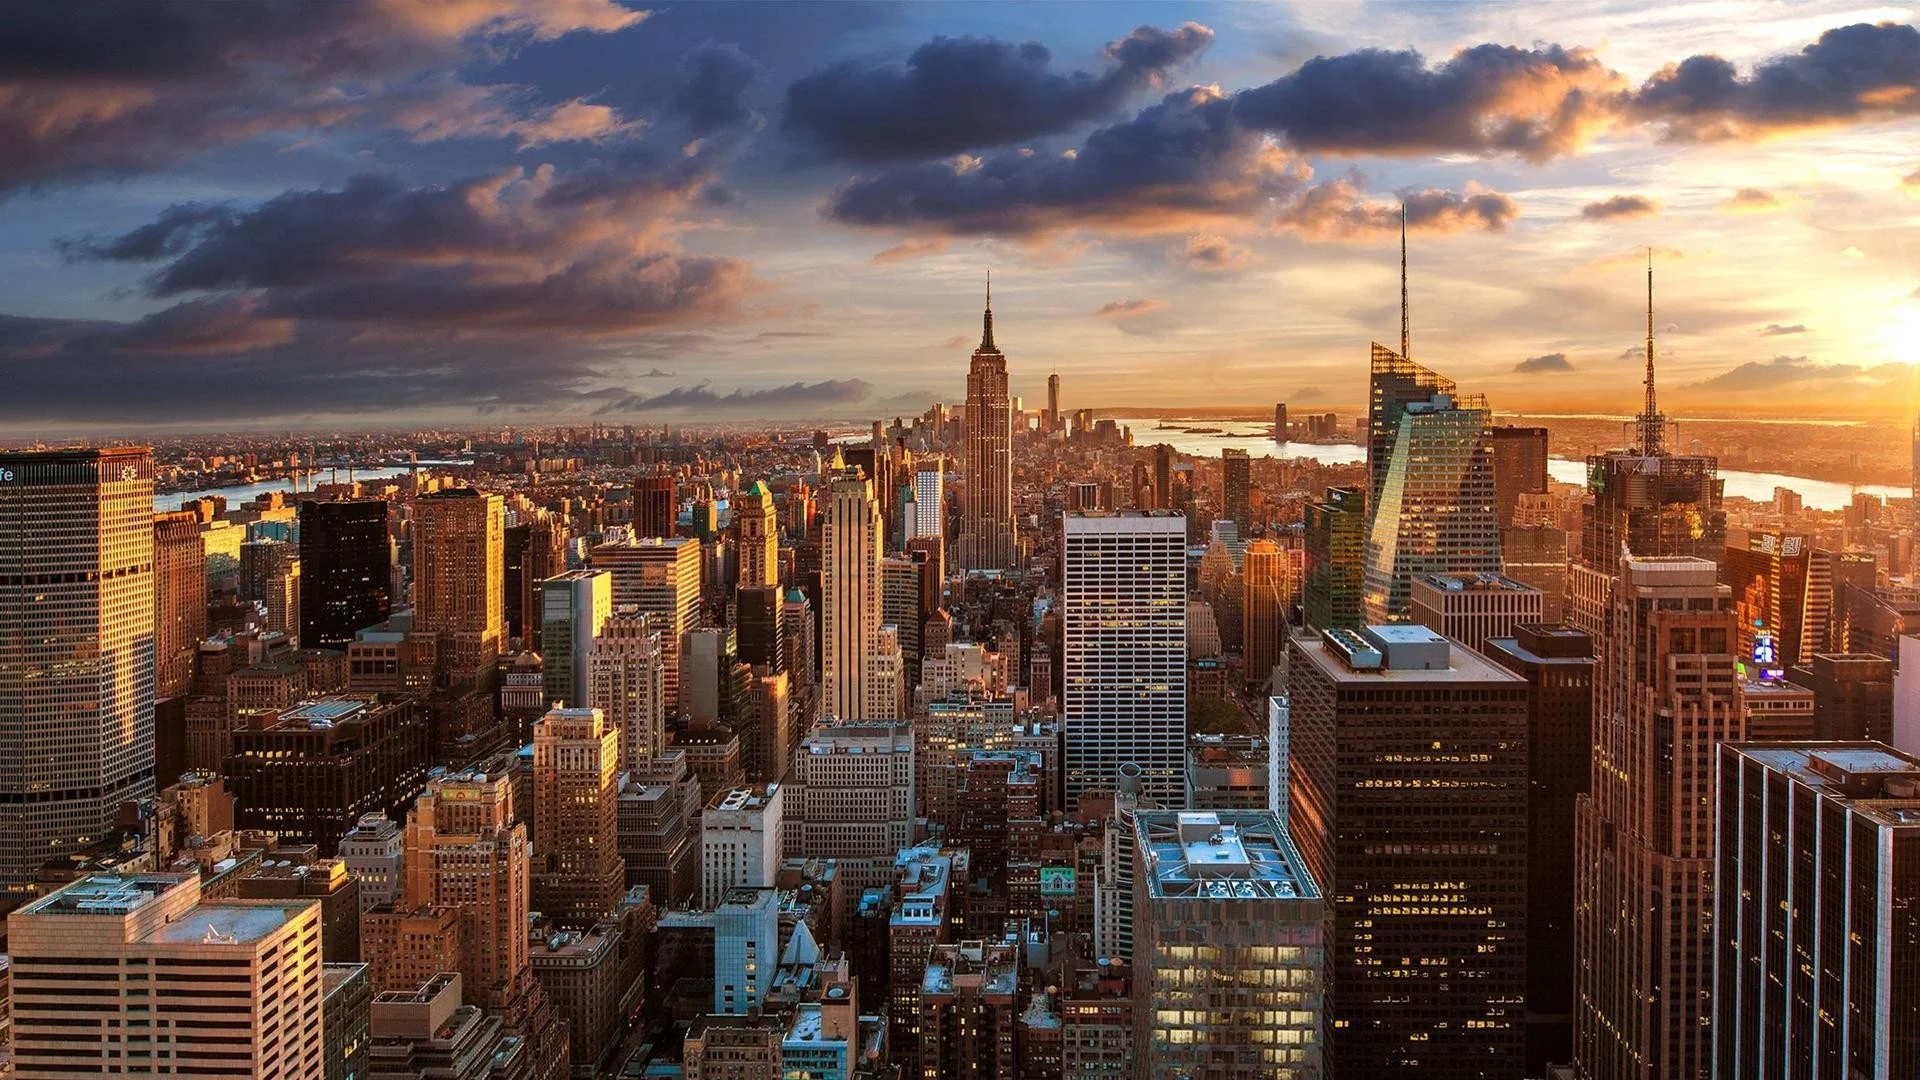 New York City 4K: Thành phố New York nổi tiếng với tầm nhìn đẹp và cuộc sống sôi động. Hình ảnh 4K sẽ mang đến cho bạn trải nghiệm tuyệt vời nhất về thành phố này. Đắm mình trong cảnh quan đẹp như mơ và khám phá địa điểm phổ biến nhất của thành phố này như tháp Empire State hay tòa nhà Chrysler.